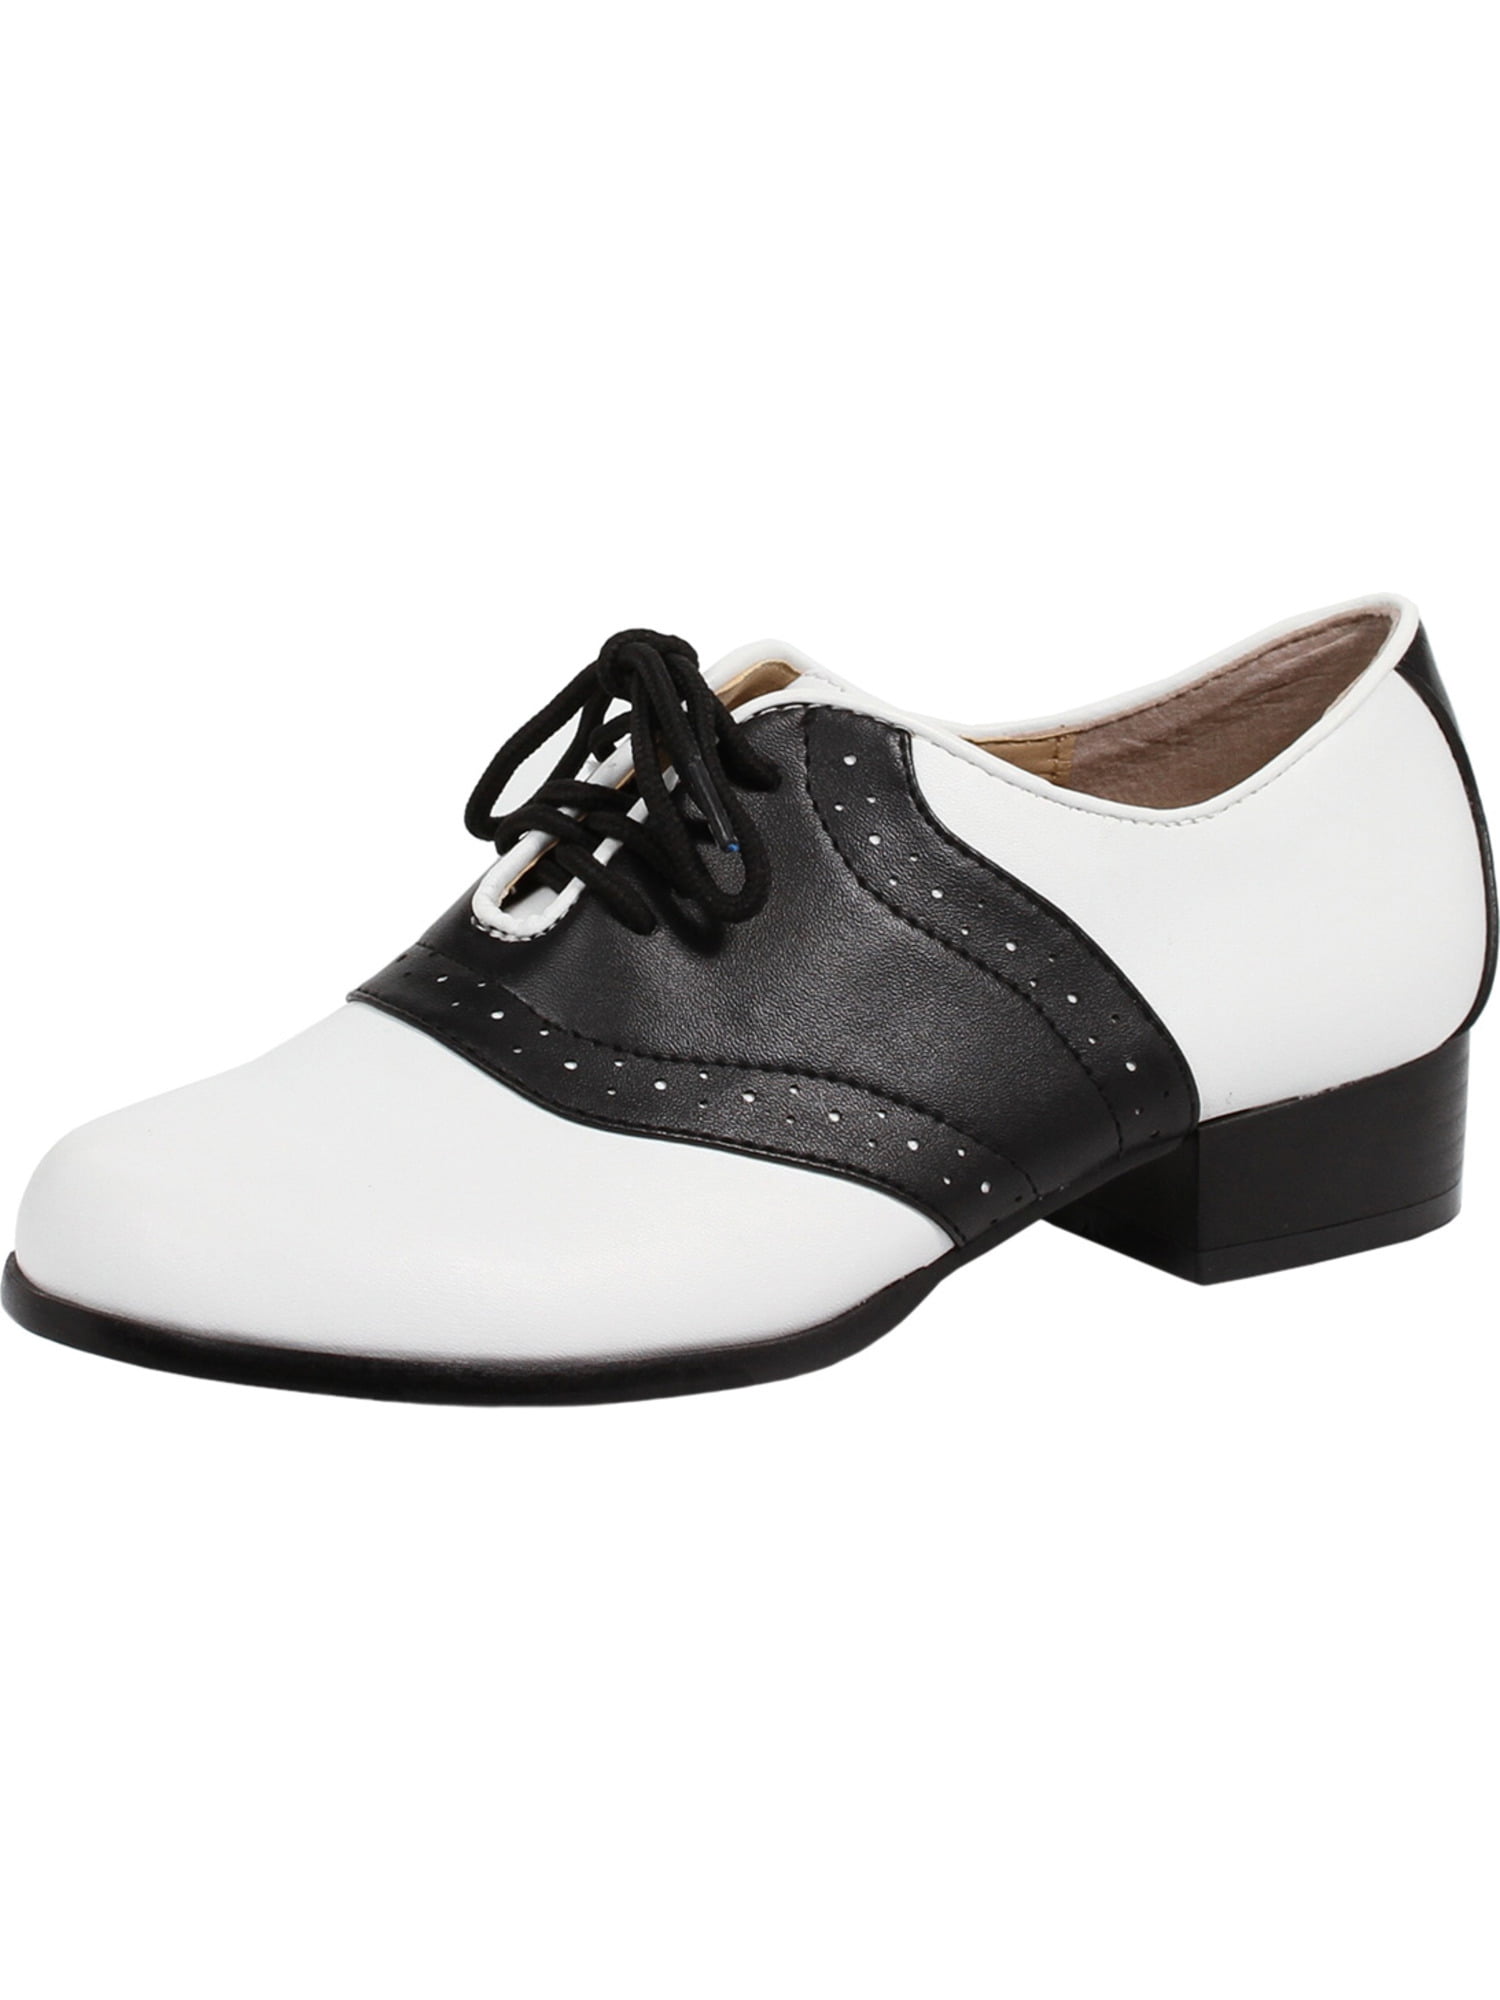 black and white saddle shoes